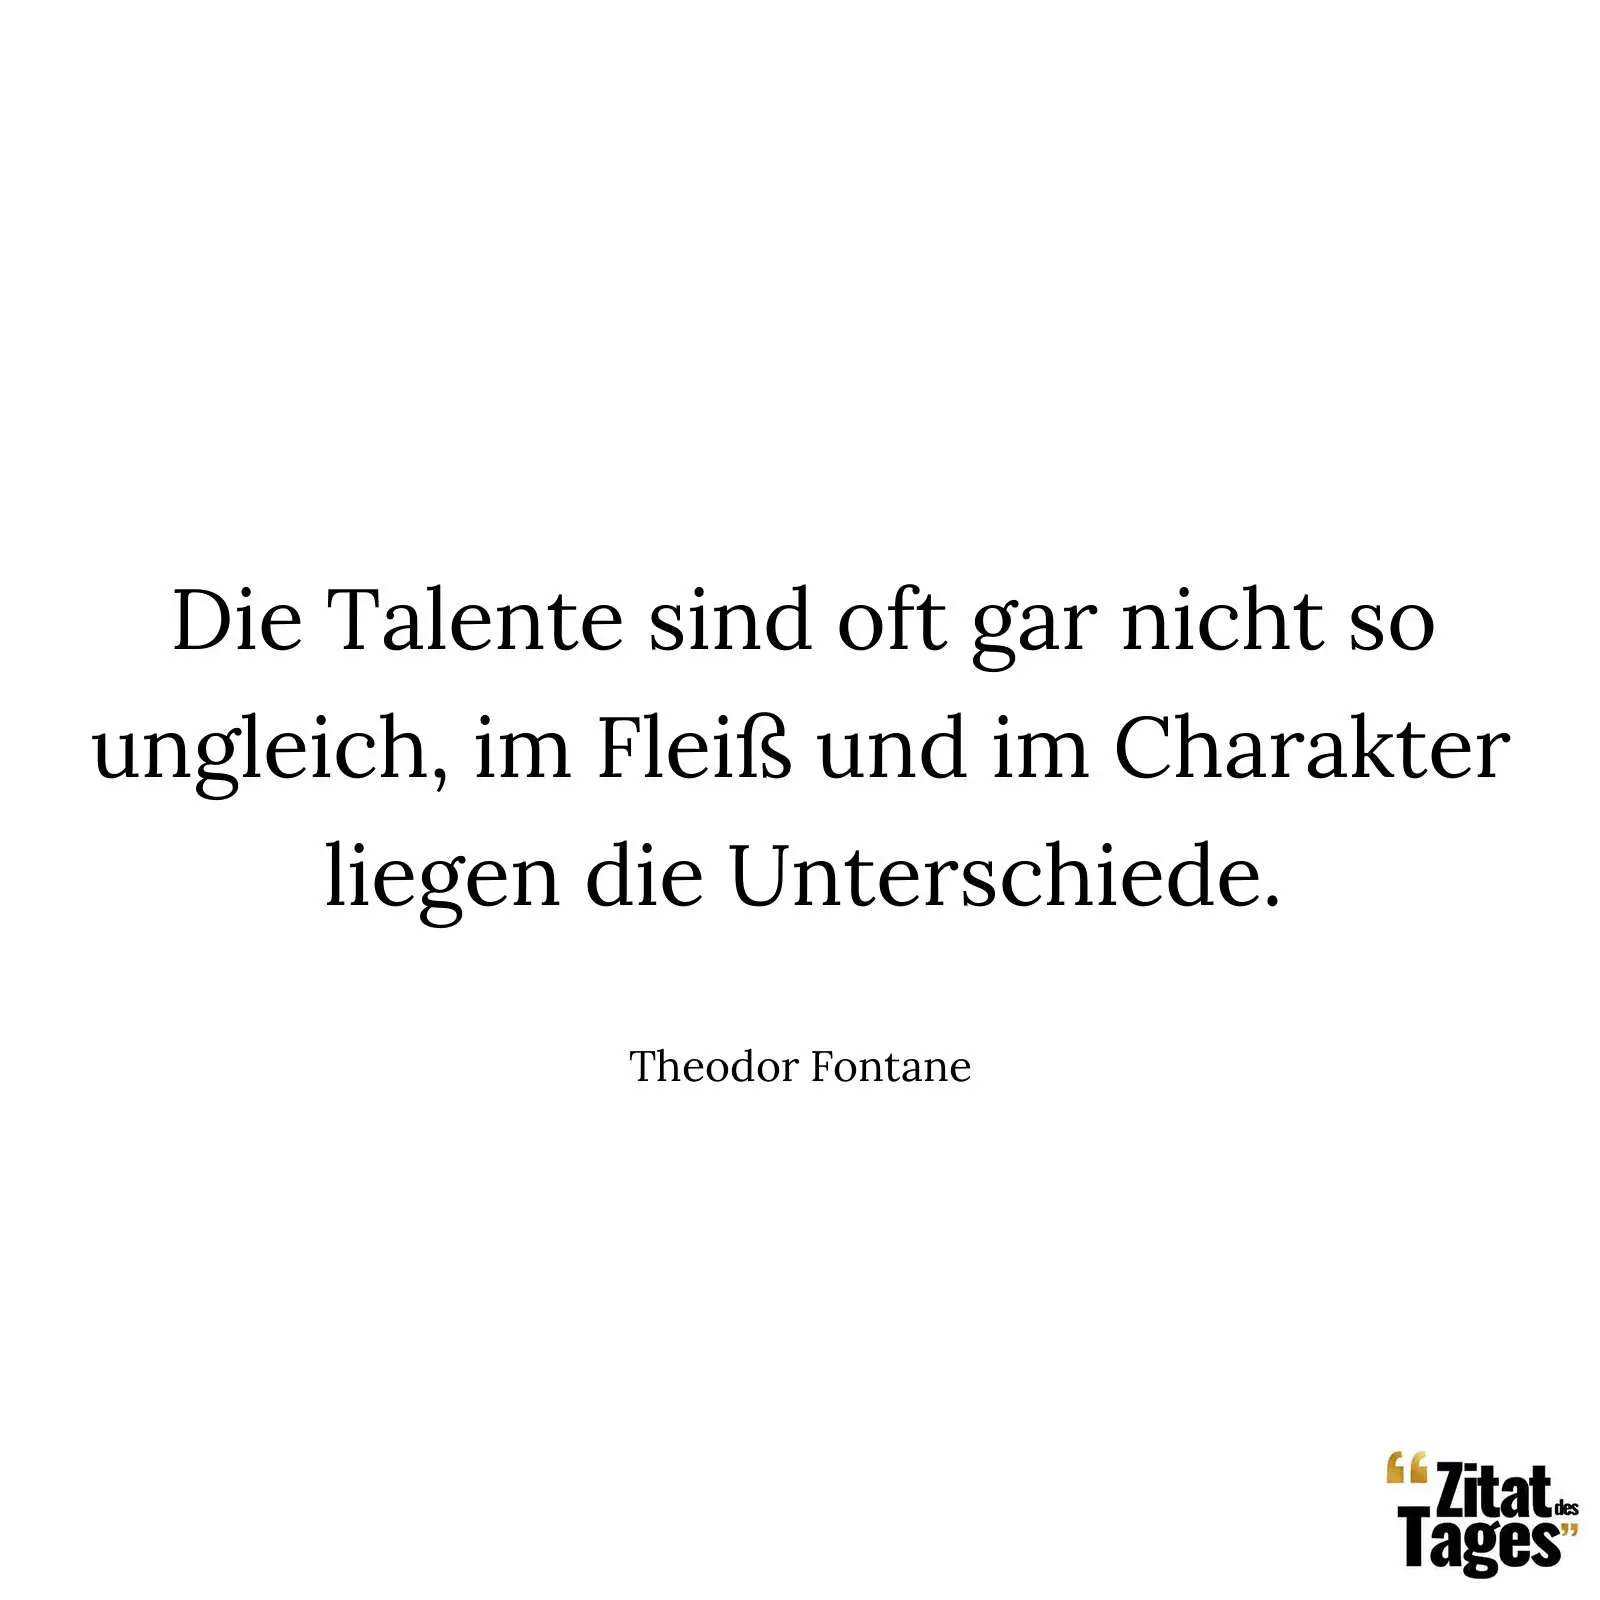 Die Talente sind oft gar nicht so ungleich, im Fleiß und im Charakter liegen die Unterschiede. - Theodor Fontane